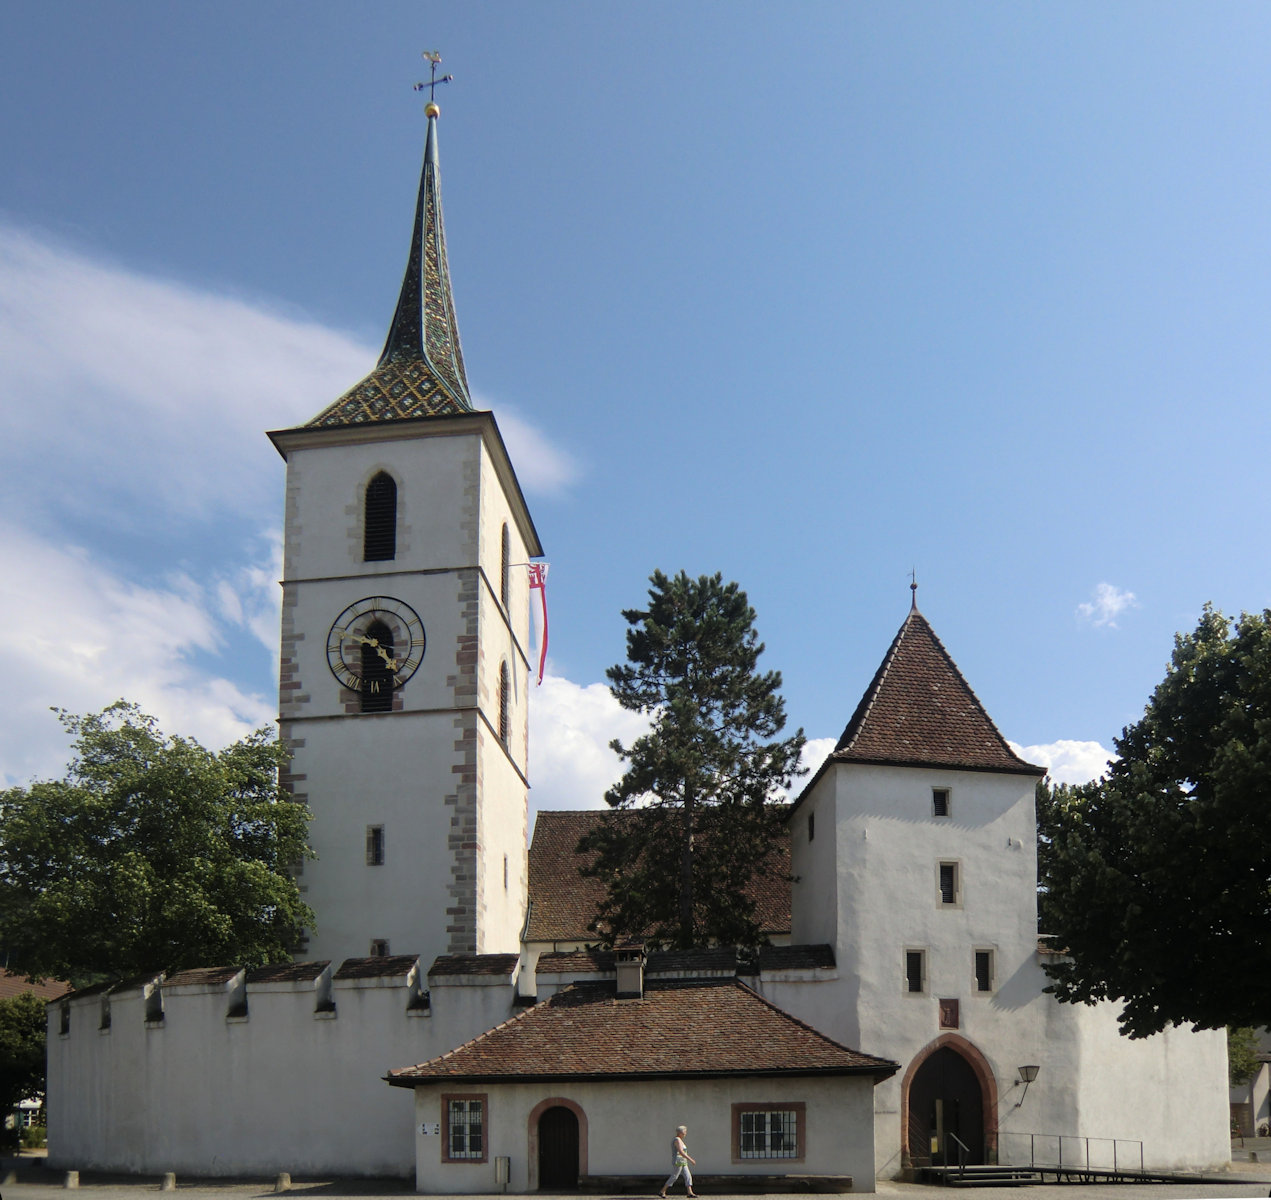 Arbogast-Kirche in Muttenz bei Basel